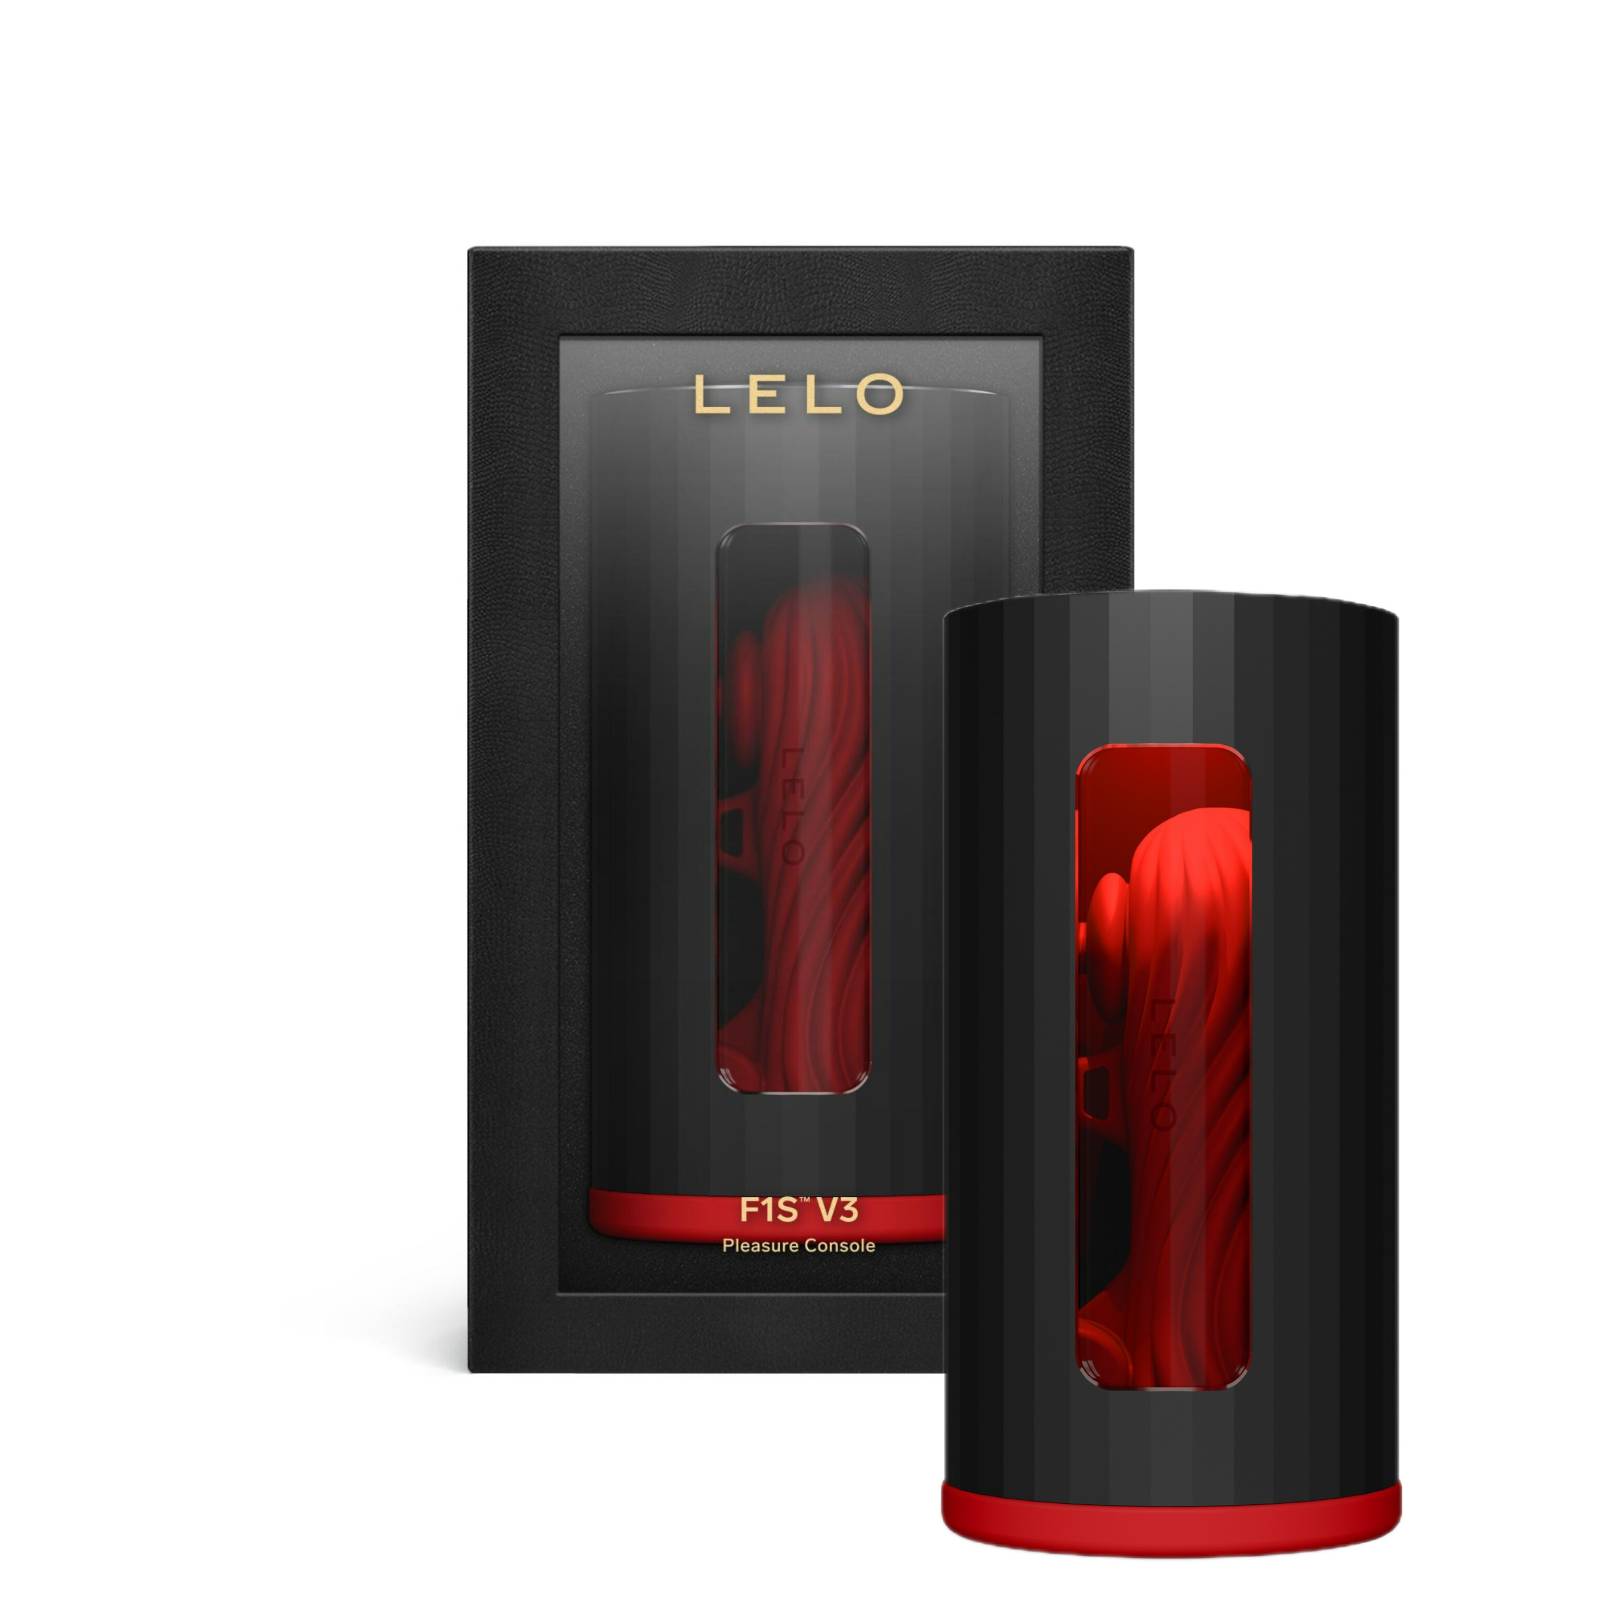  LELO F1S V3 red